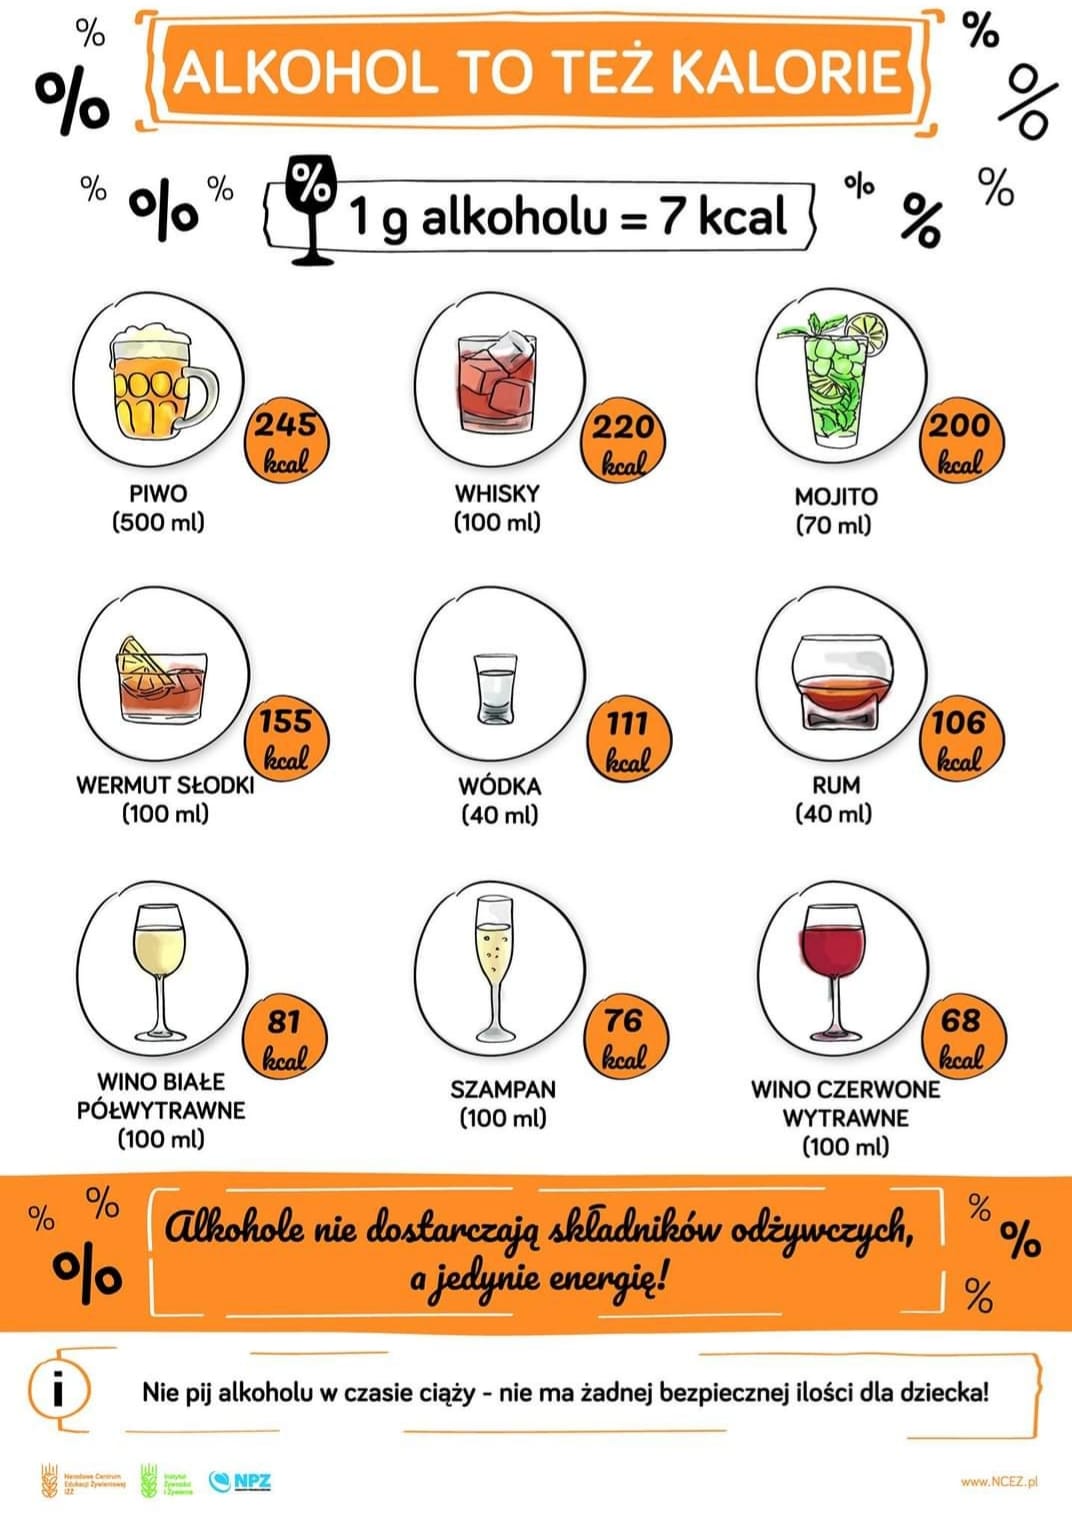 Jaki alkohol ma najmniej kalorii? - tabela kaloryczności!